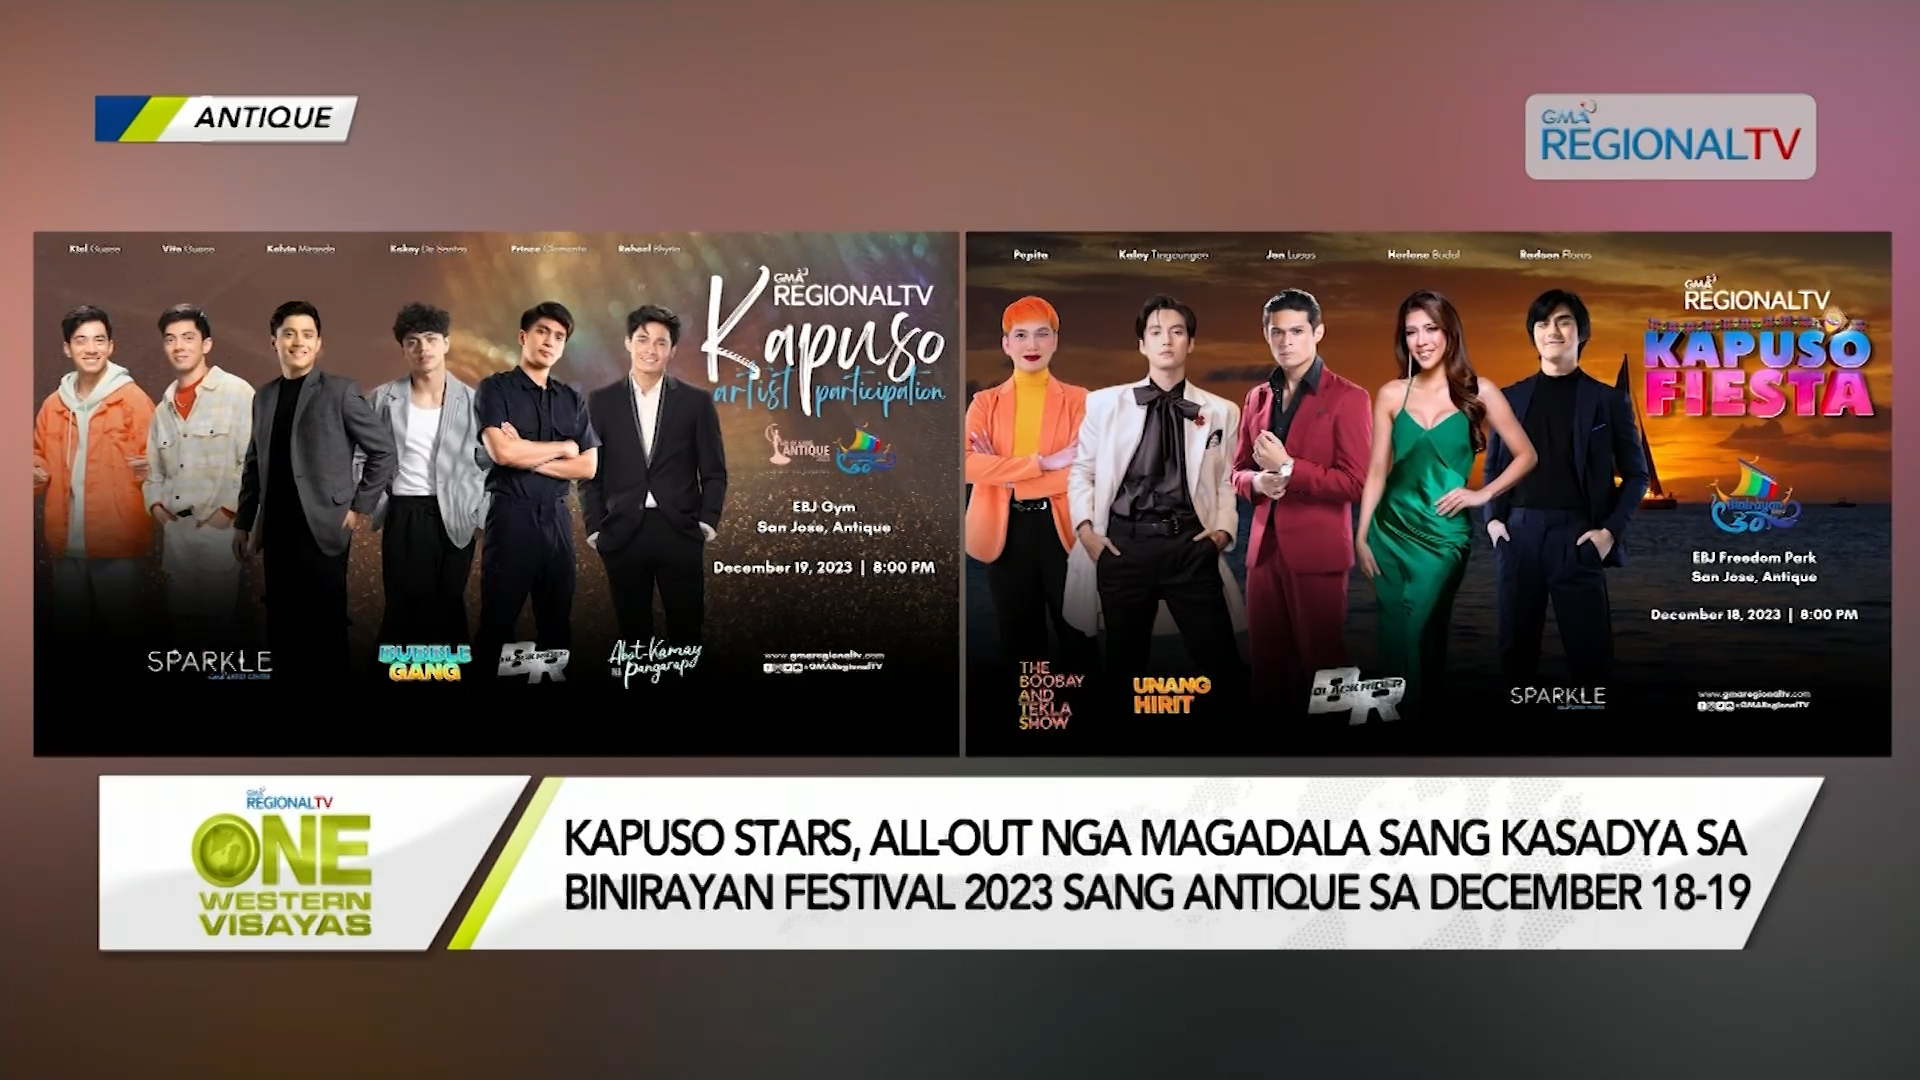 Kapuso Stars, all-out nga magadala sang kasadya sa Binirayan Festival 2023